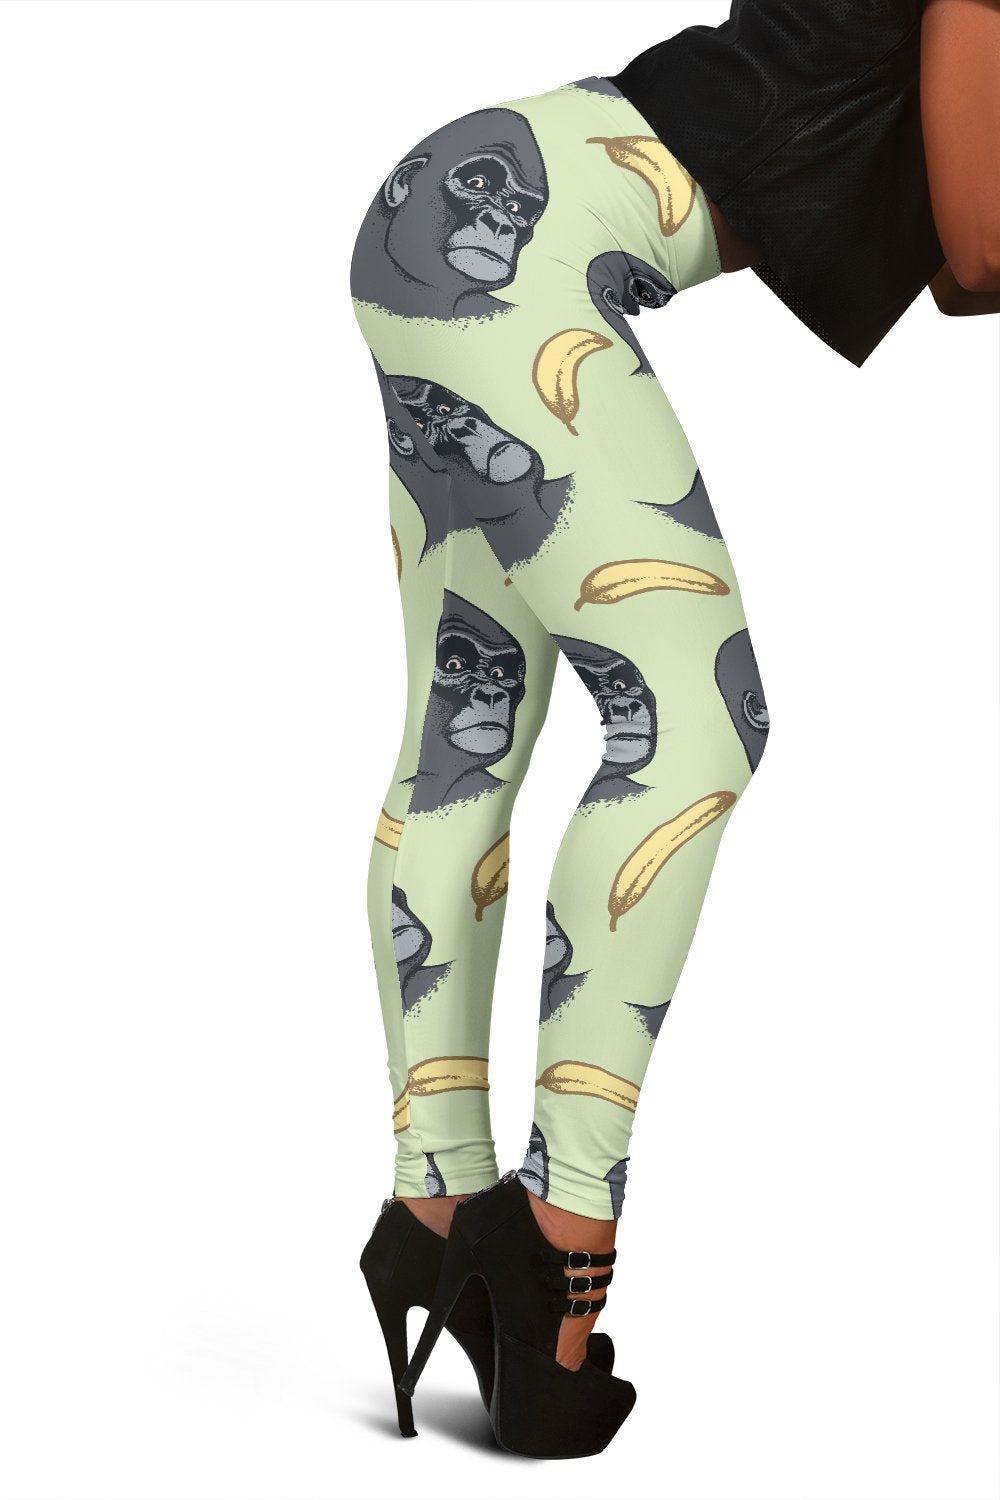 Gorilla Banana Pattern Print Women Leggings-grizzshop